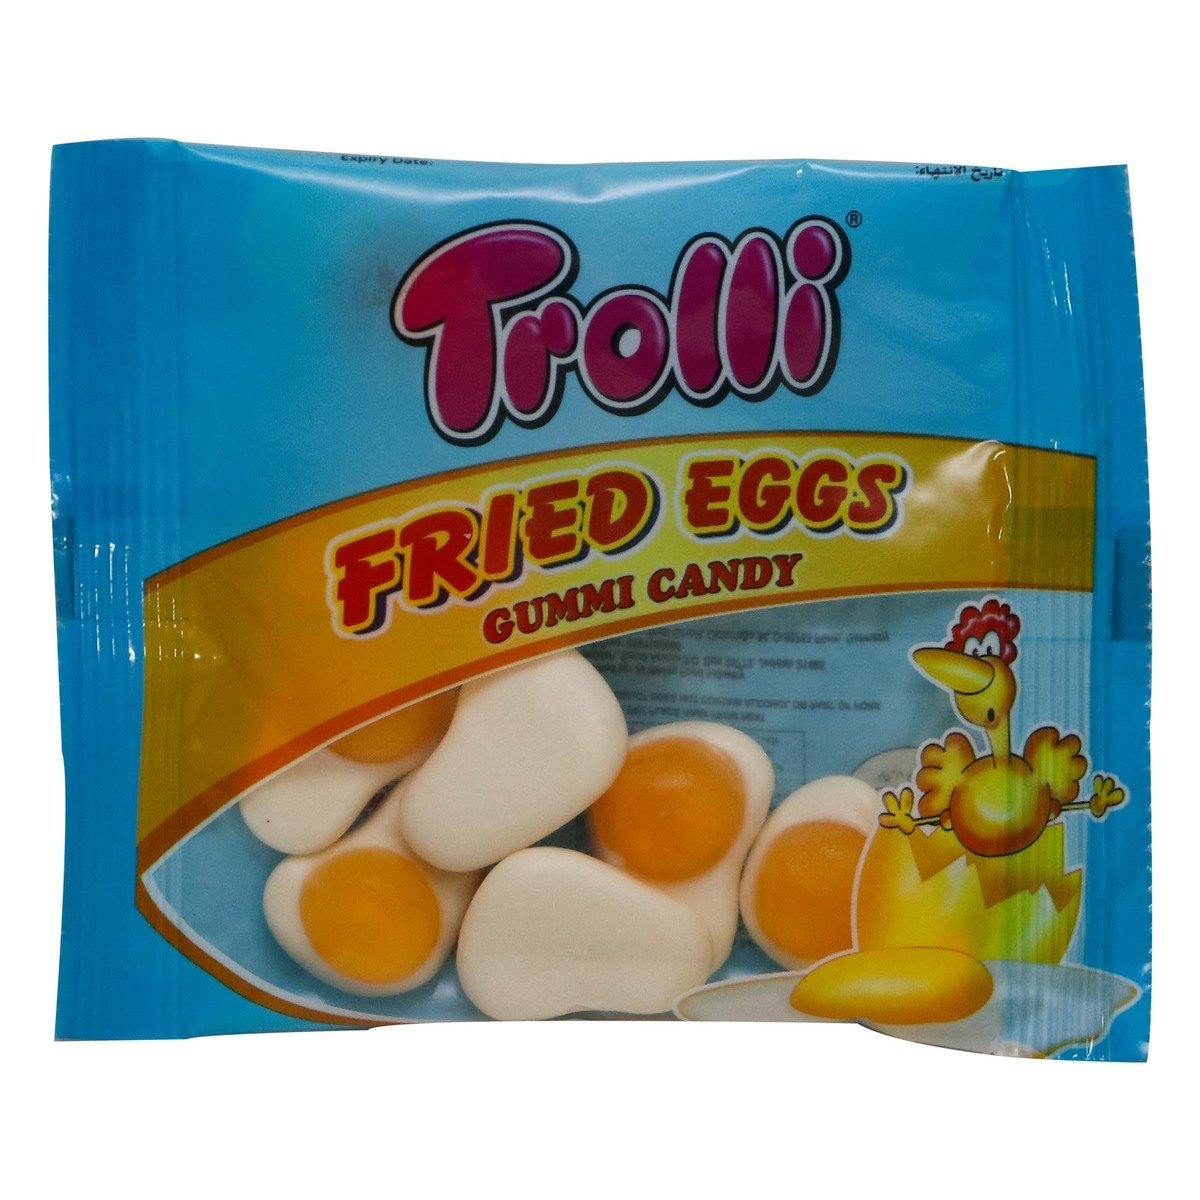 Trolli Gummi Candy Fried Egg 18g